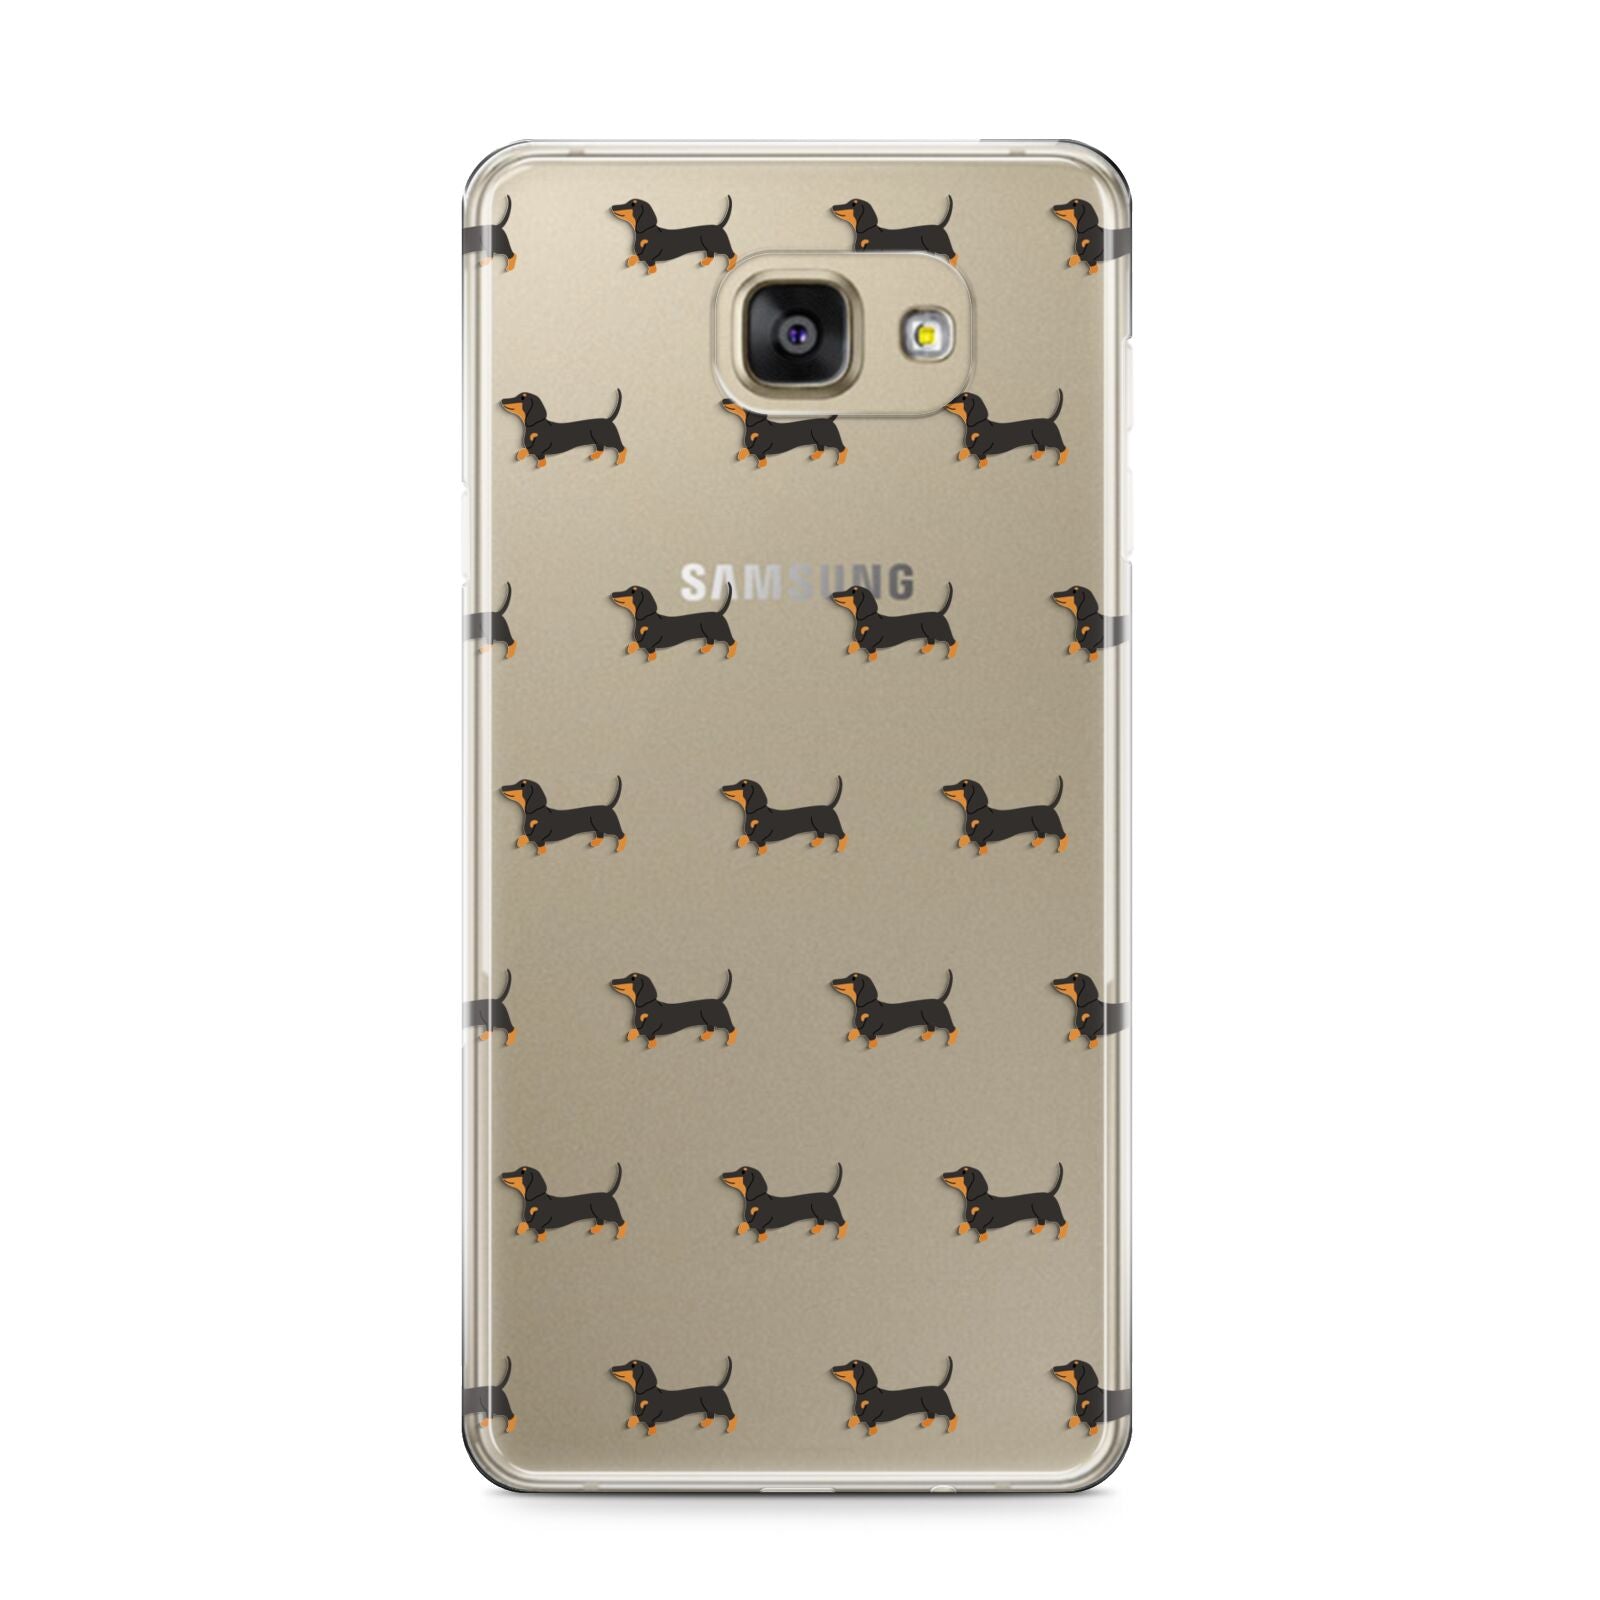 Dachshund Samsung Galaxy A9 2016 Case on gold phone